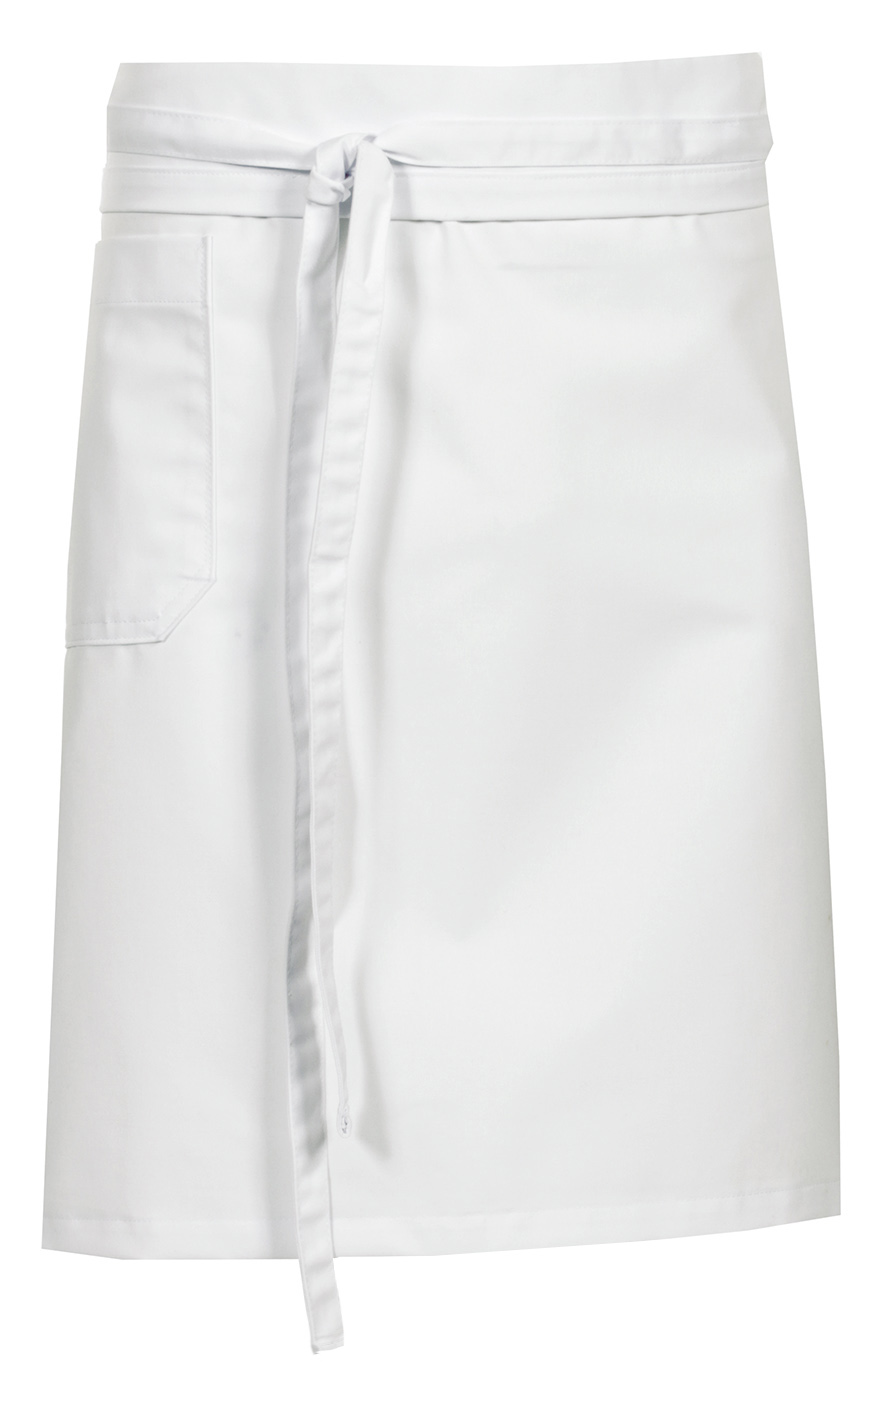 Weiß Vorbinder, Halbschürze mit Tasche auf rechte Hüfte, Pick-Up (3180629)